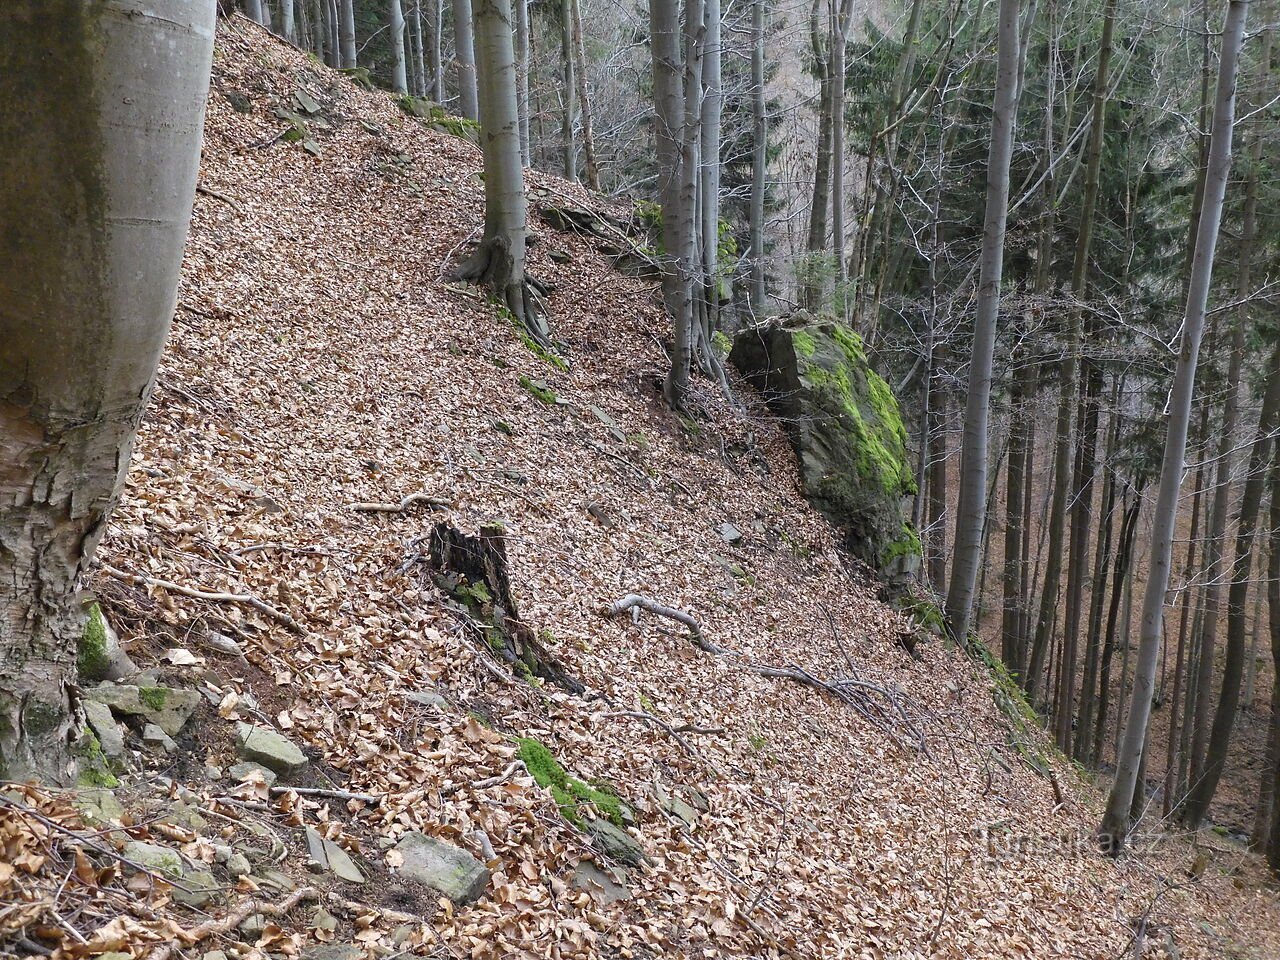 Interessanti formazioni rocciose e rocciose a nord della cresta Sulov - Mosty u Jablunkova, parte 4.